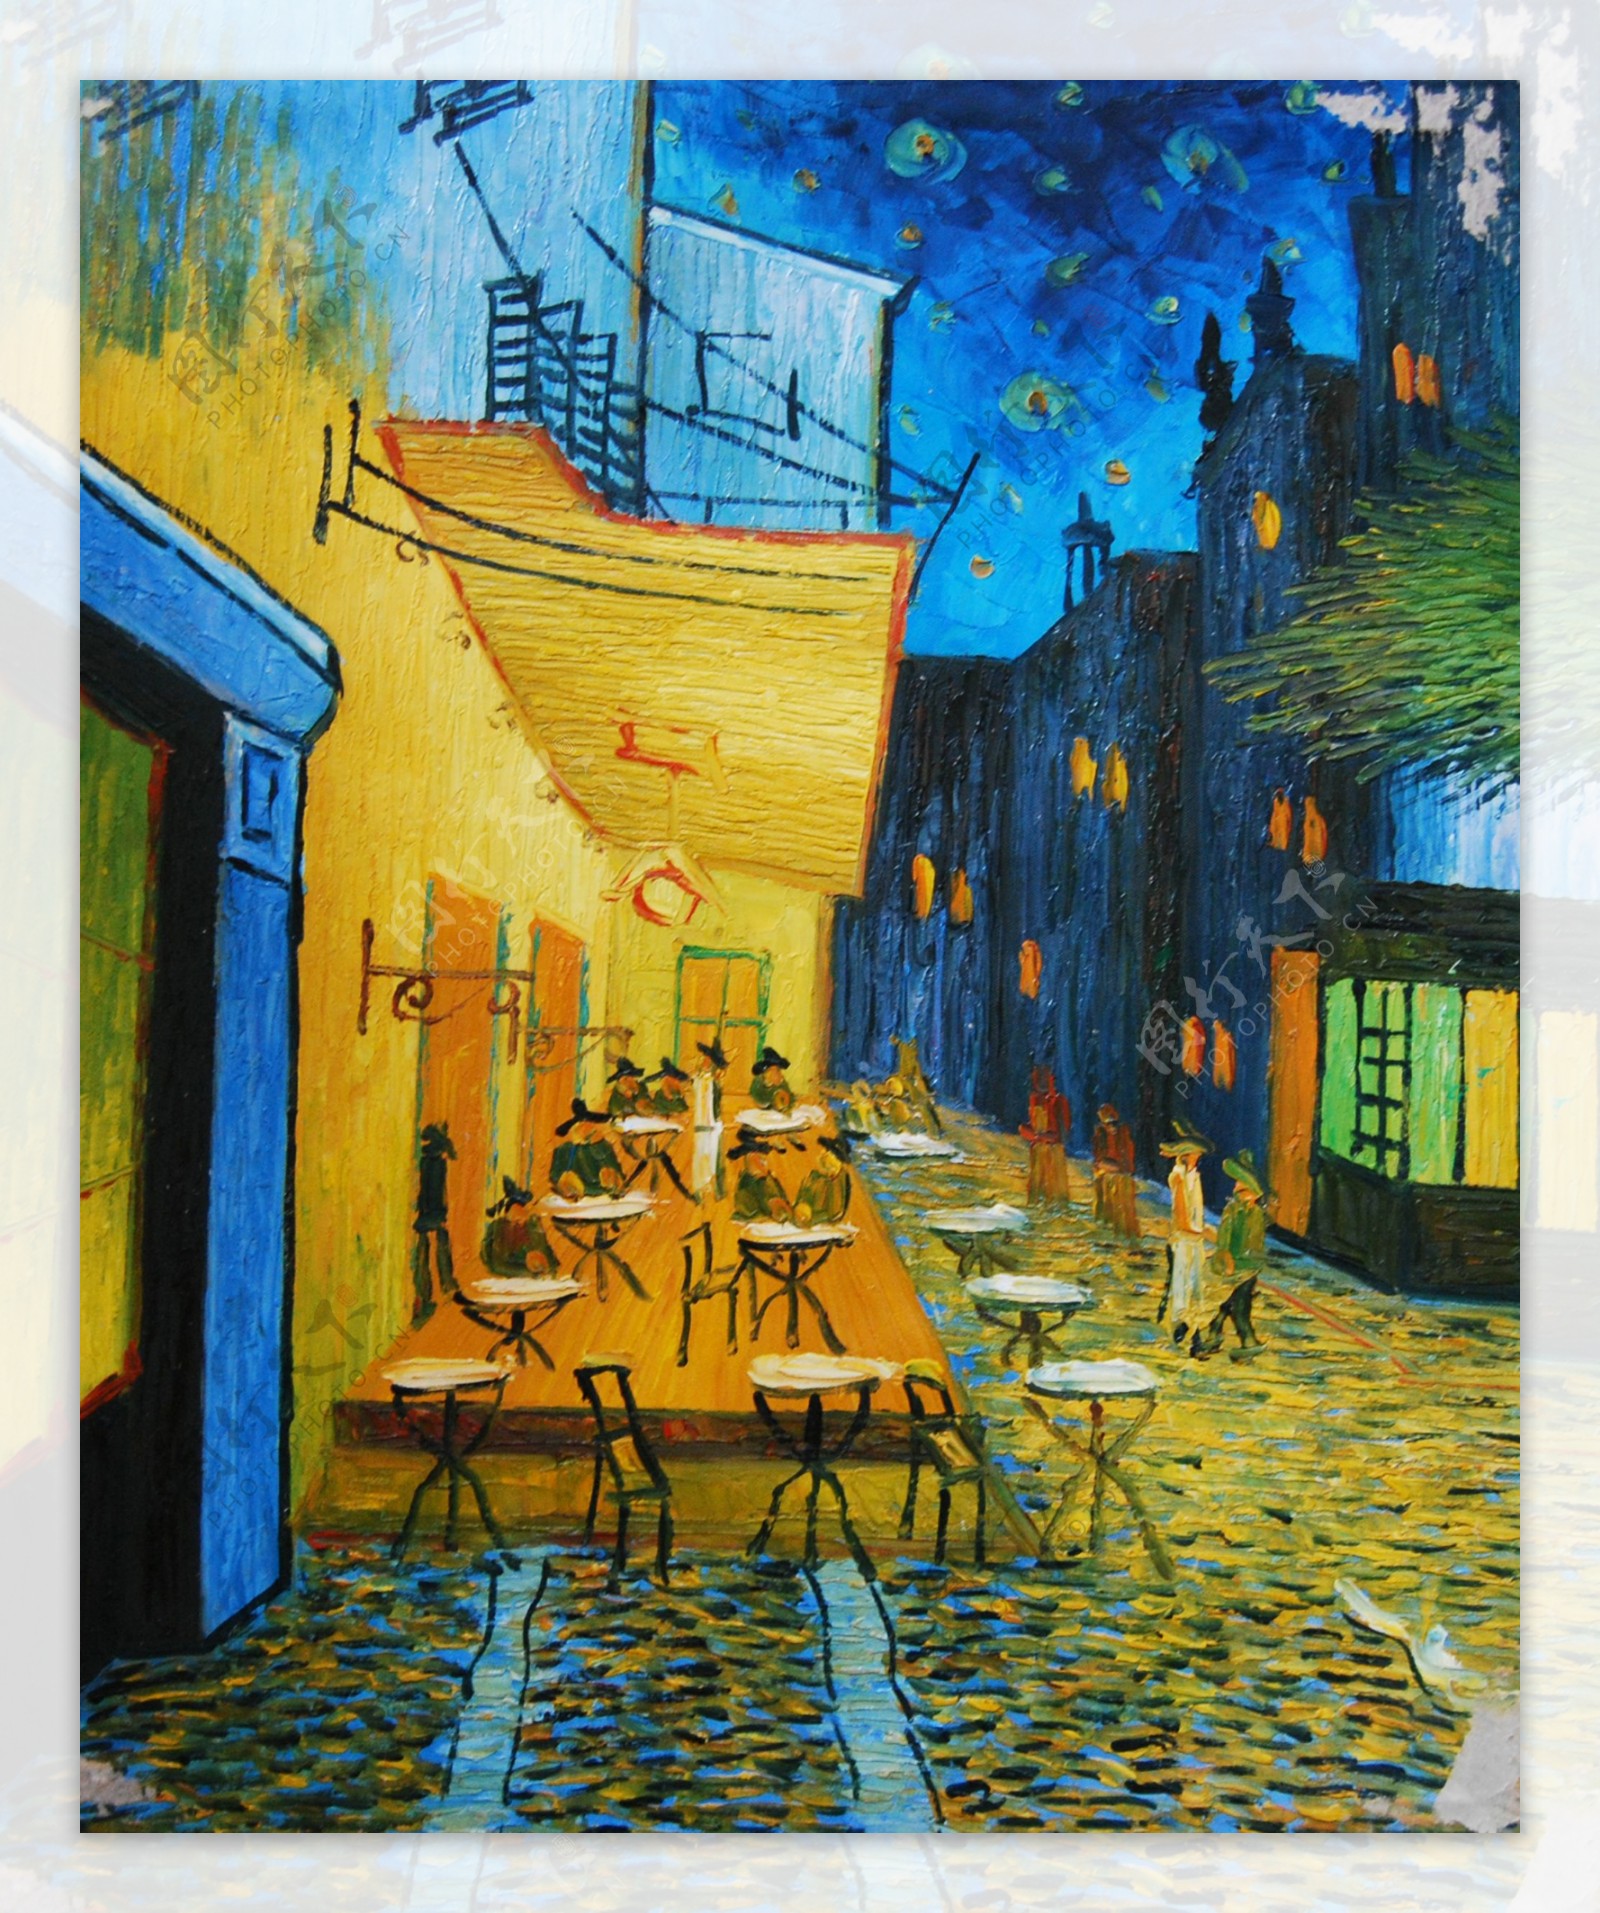 街头小巷餐厅外景风格抽象油画